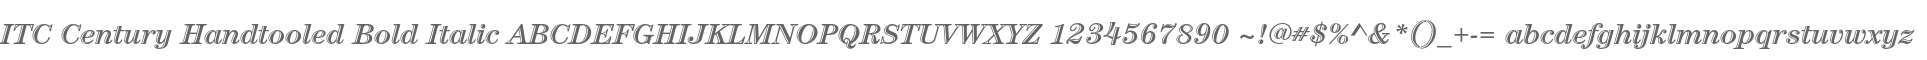 ITC Century Handtooled Bold Italic